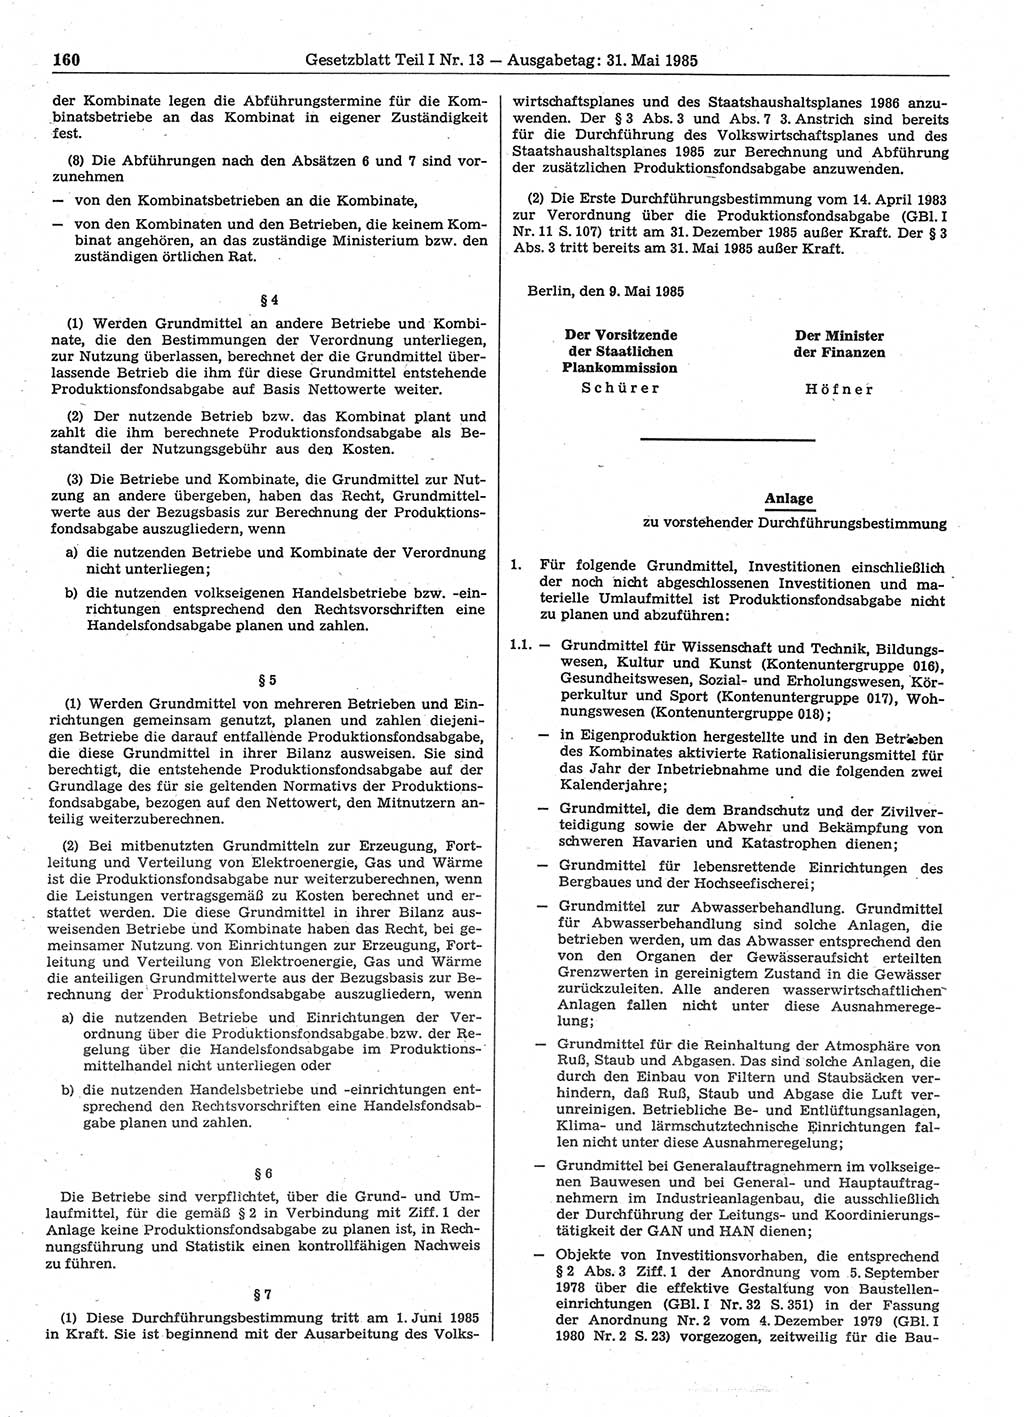 Gesetzblatt (GBl.) der Deutschen Demokratischen Republik (DDR) Teil Ⅰ 1985, Seite 160 (GBl. DDR Ⅰ 1985, S. 160)